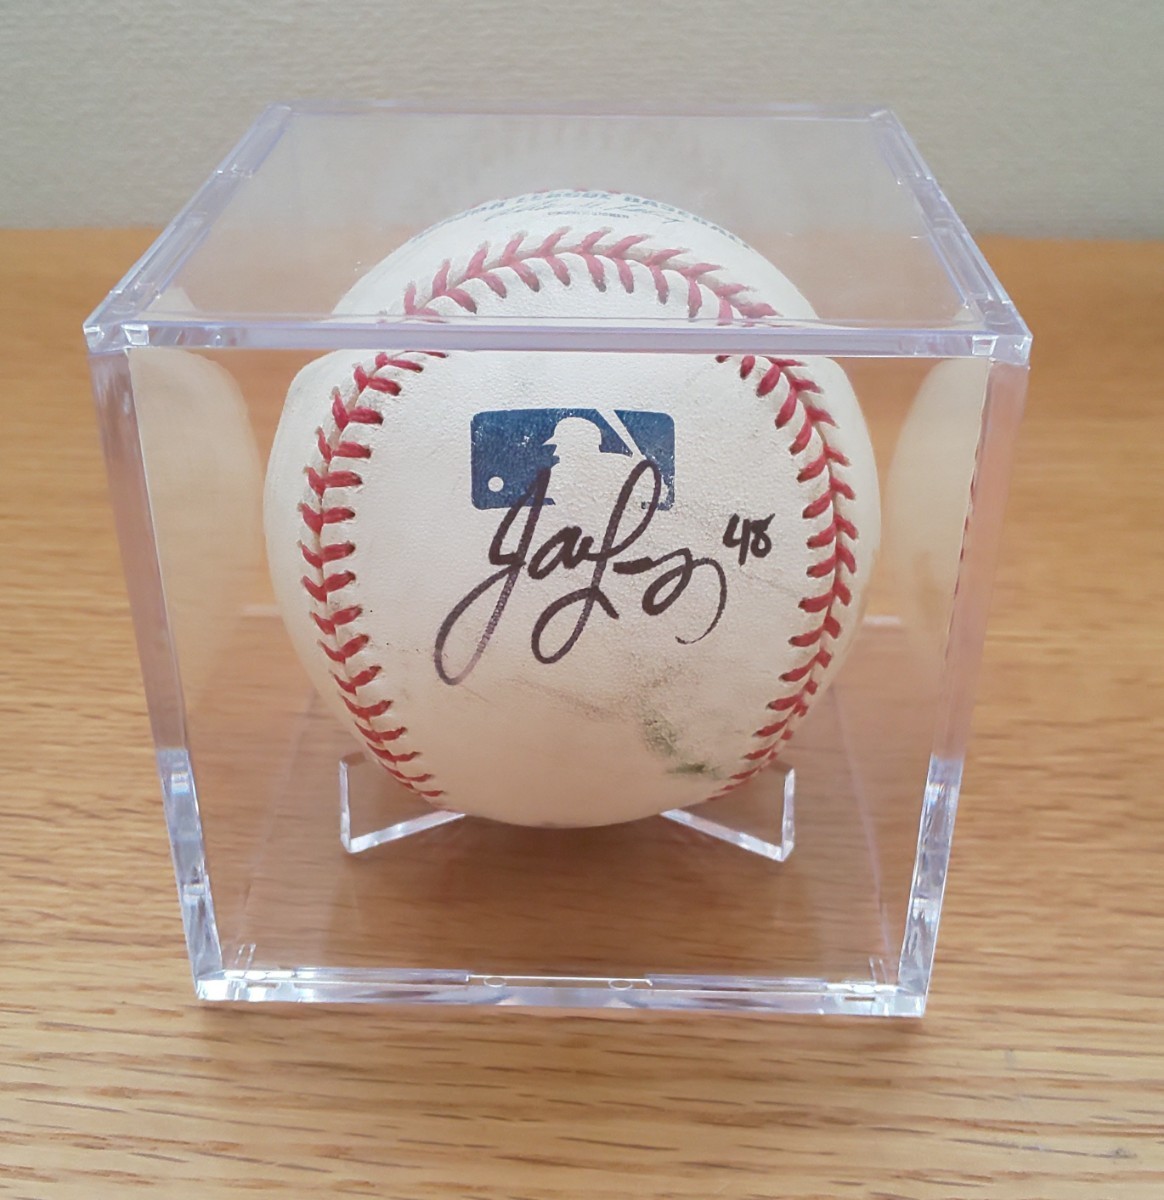 2008年 MLB メジャーリーグ 開幕戦 練習球(練習時 使用済) ハビアーロペス投手 直筆サイン入りボール